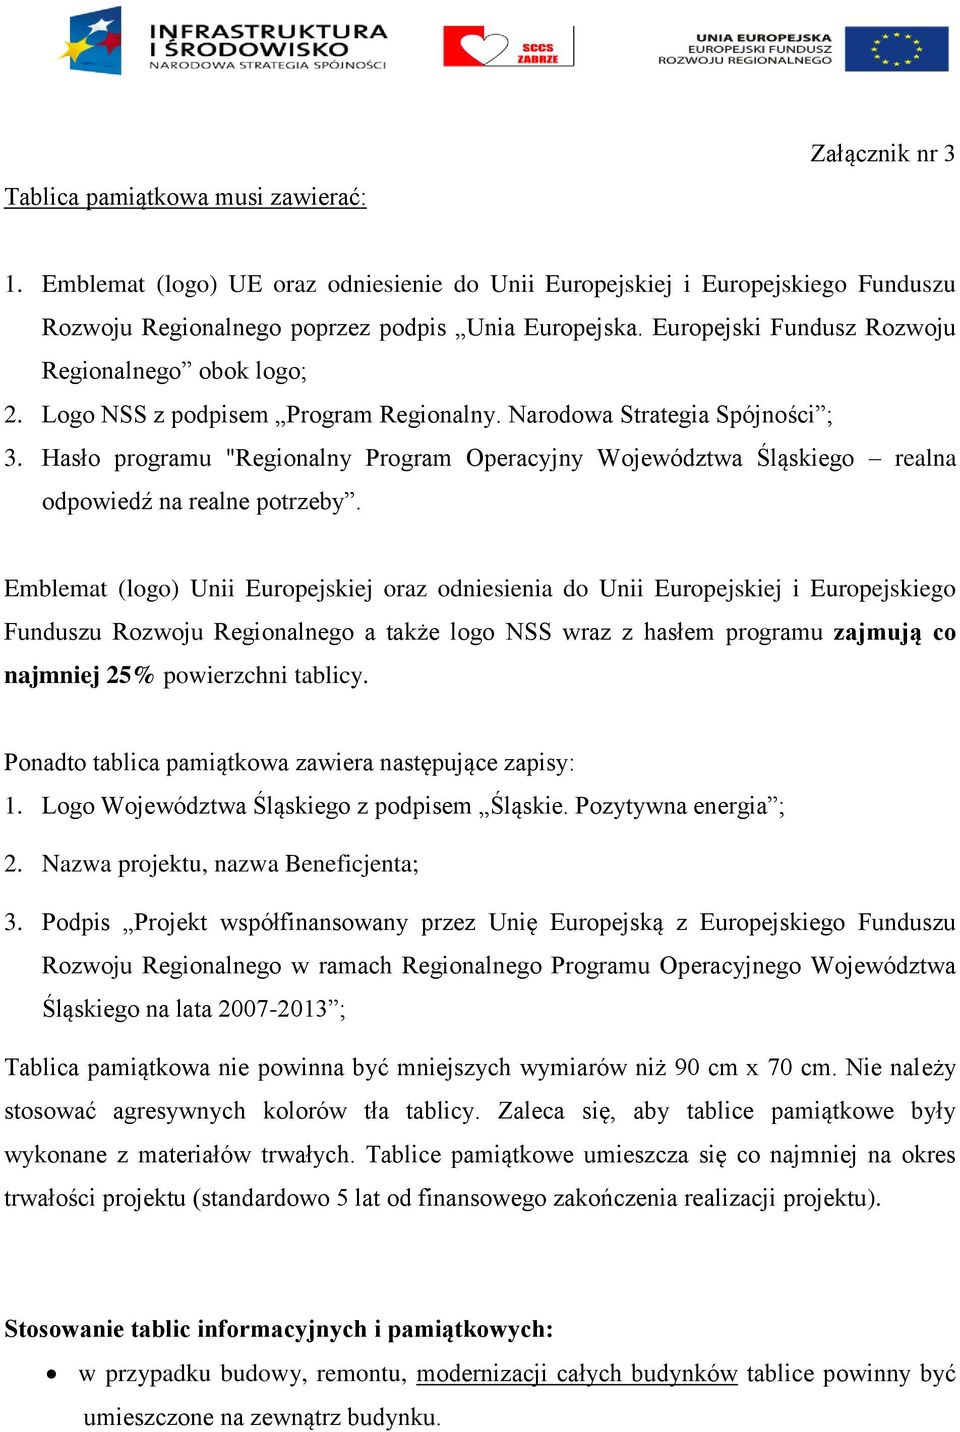 Hasło programu "Regionalny Program Operacyjny Województwa Śląskiego realna odpowiedź na realne potrzeby.